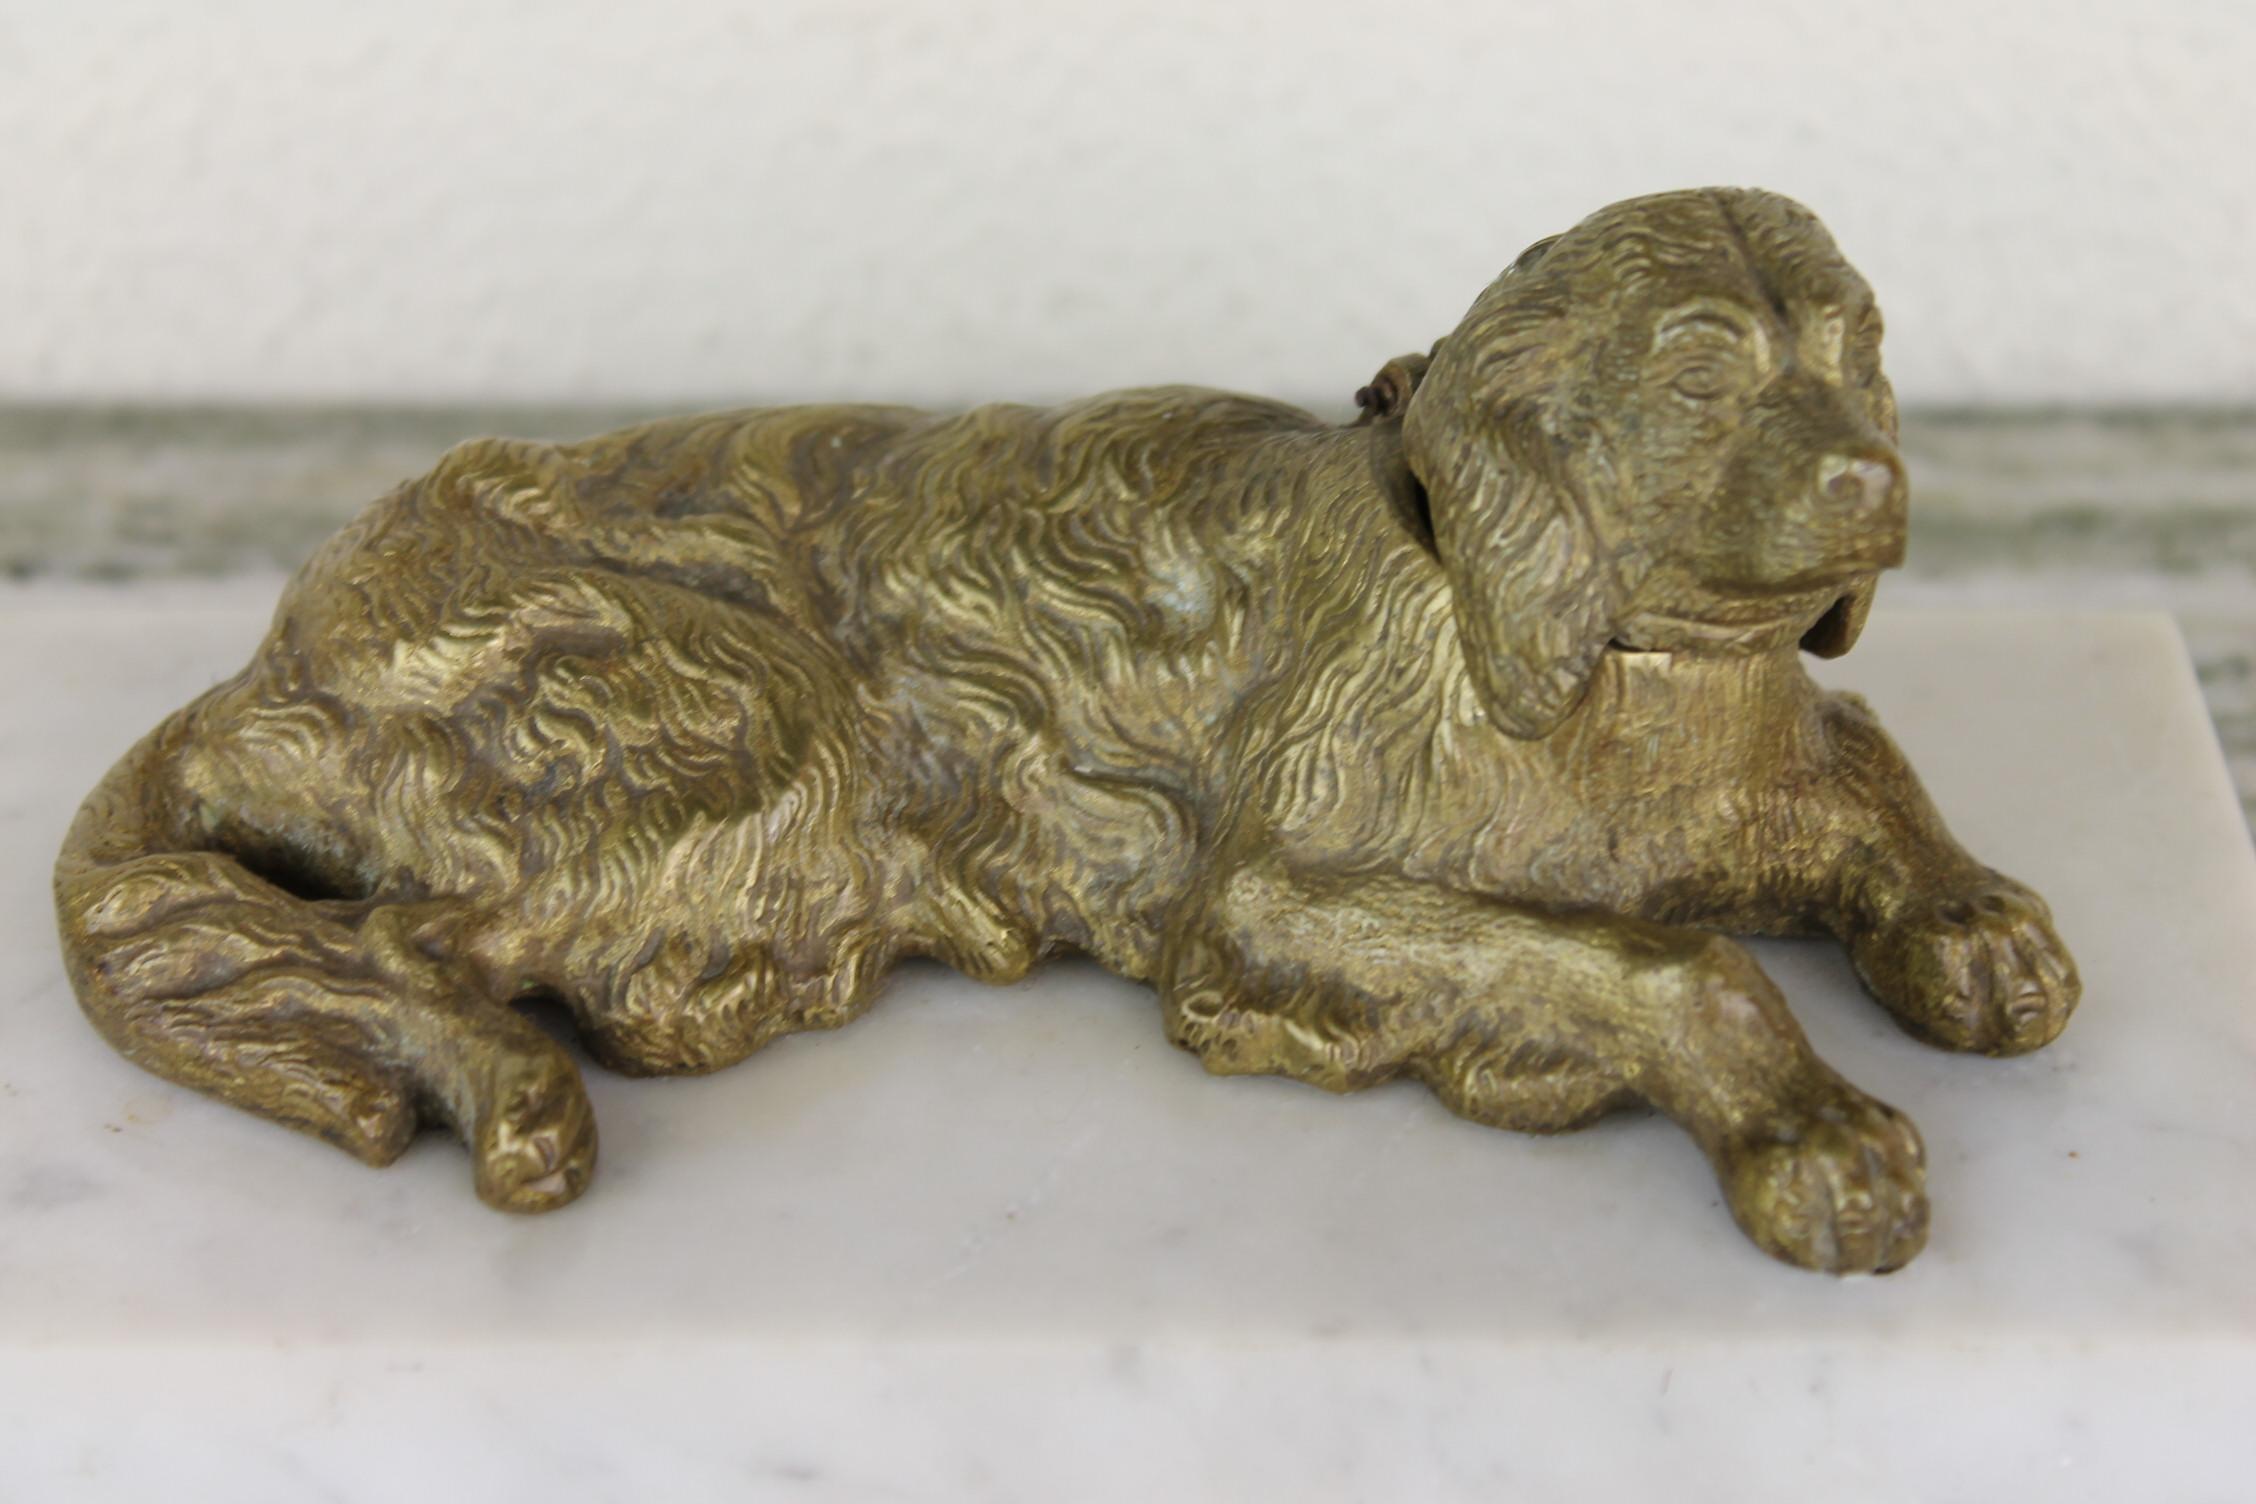 Art Deco Tintenfass mit Irish Setter Hund. 
Dieses Tintenfass hat einen Marmorsockel, eine Irish Setter-Skulptur aus Bronze und ein Tintenfass aus Kupfer und Zinn. 
Dieses Schreibtisch-Accessoire mit einem Sport- und Jagdhund wird in Ihrem Interieur